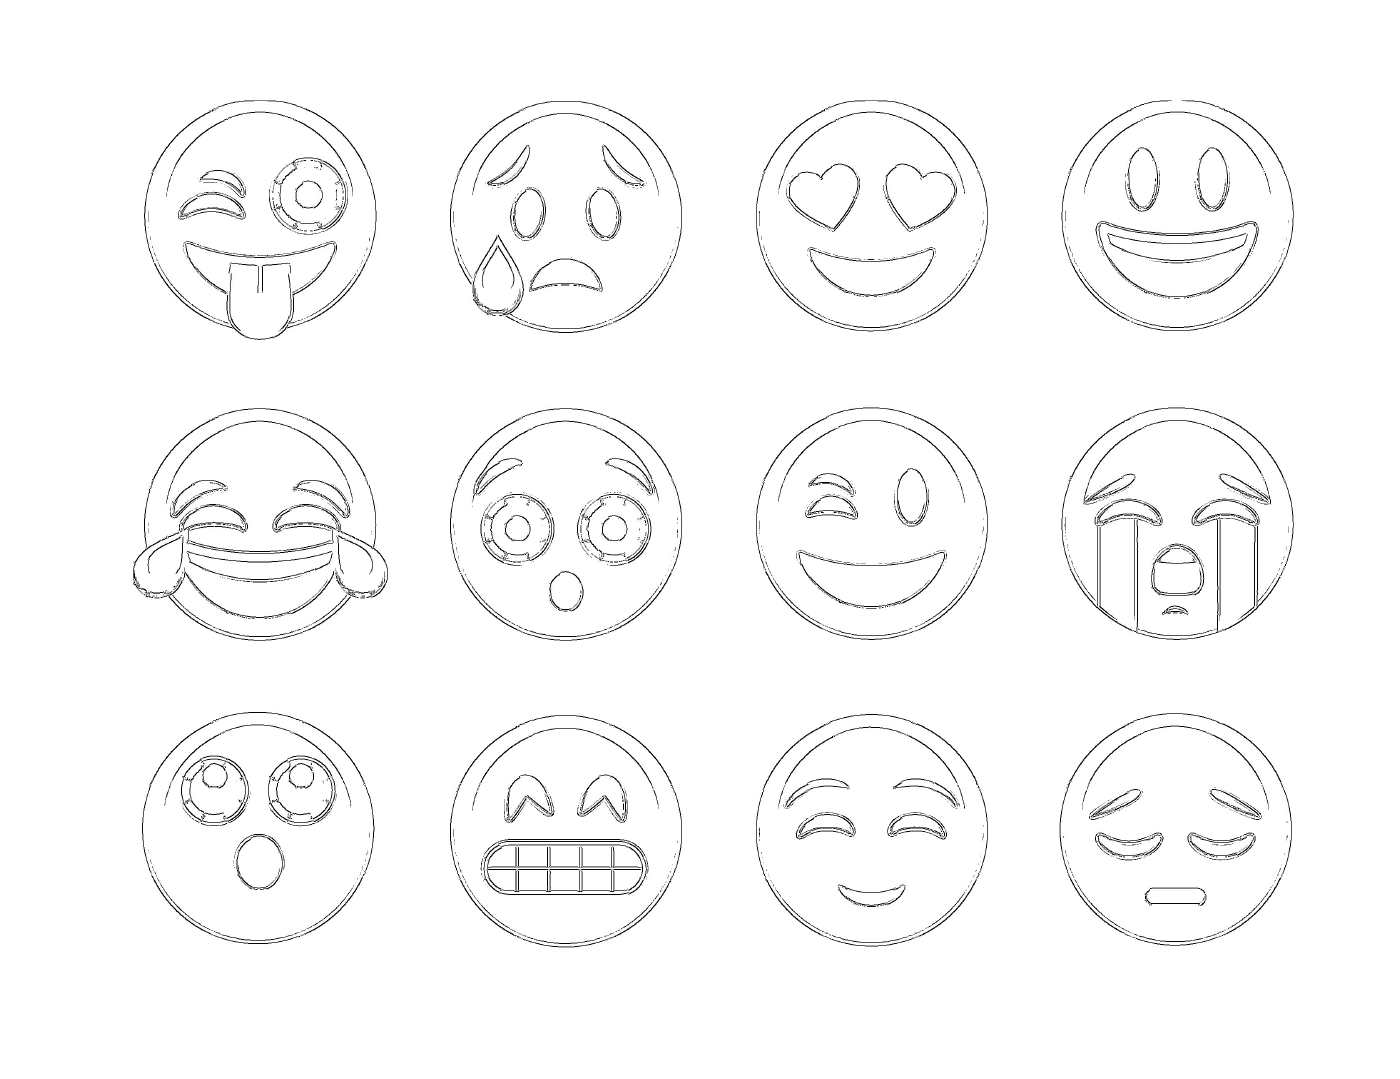  Um conjunto de 12 emoticons diferentes 